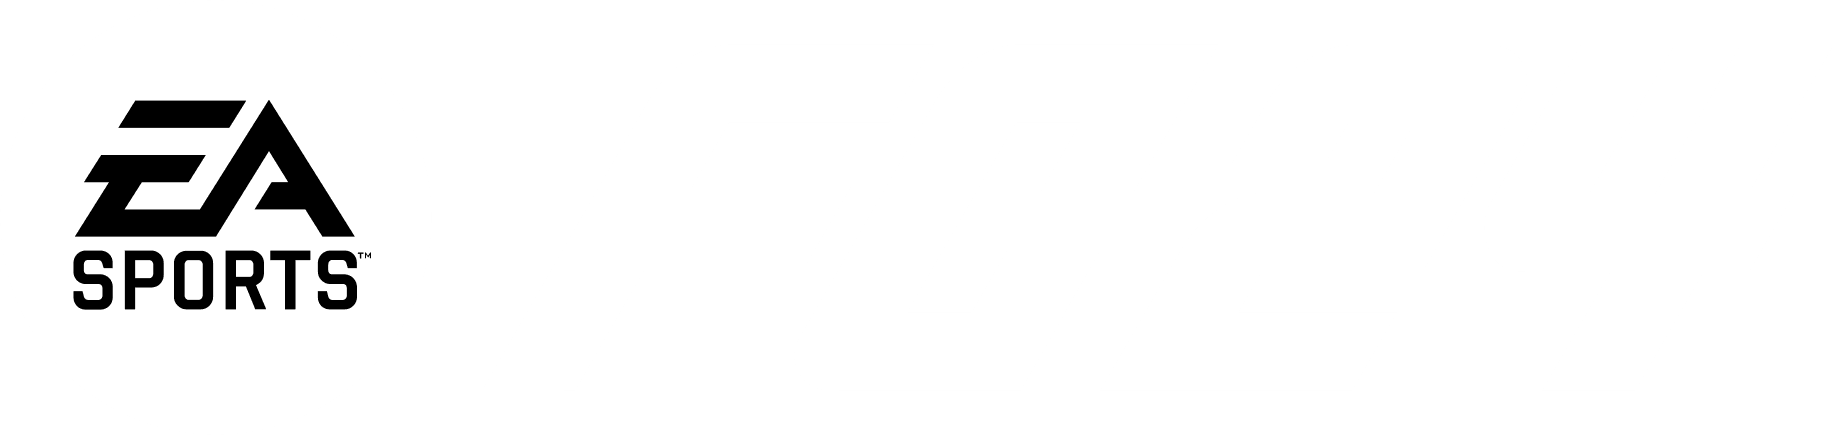 EA スポーツ FC 24 ロゴ